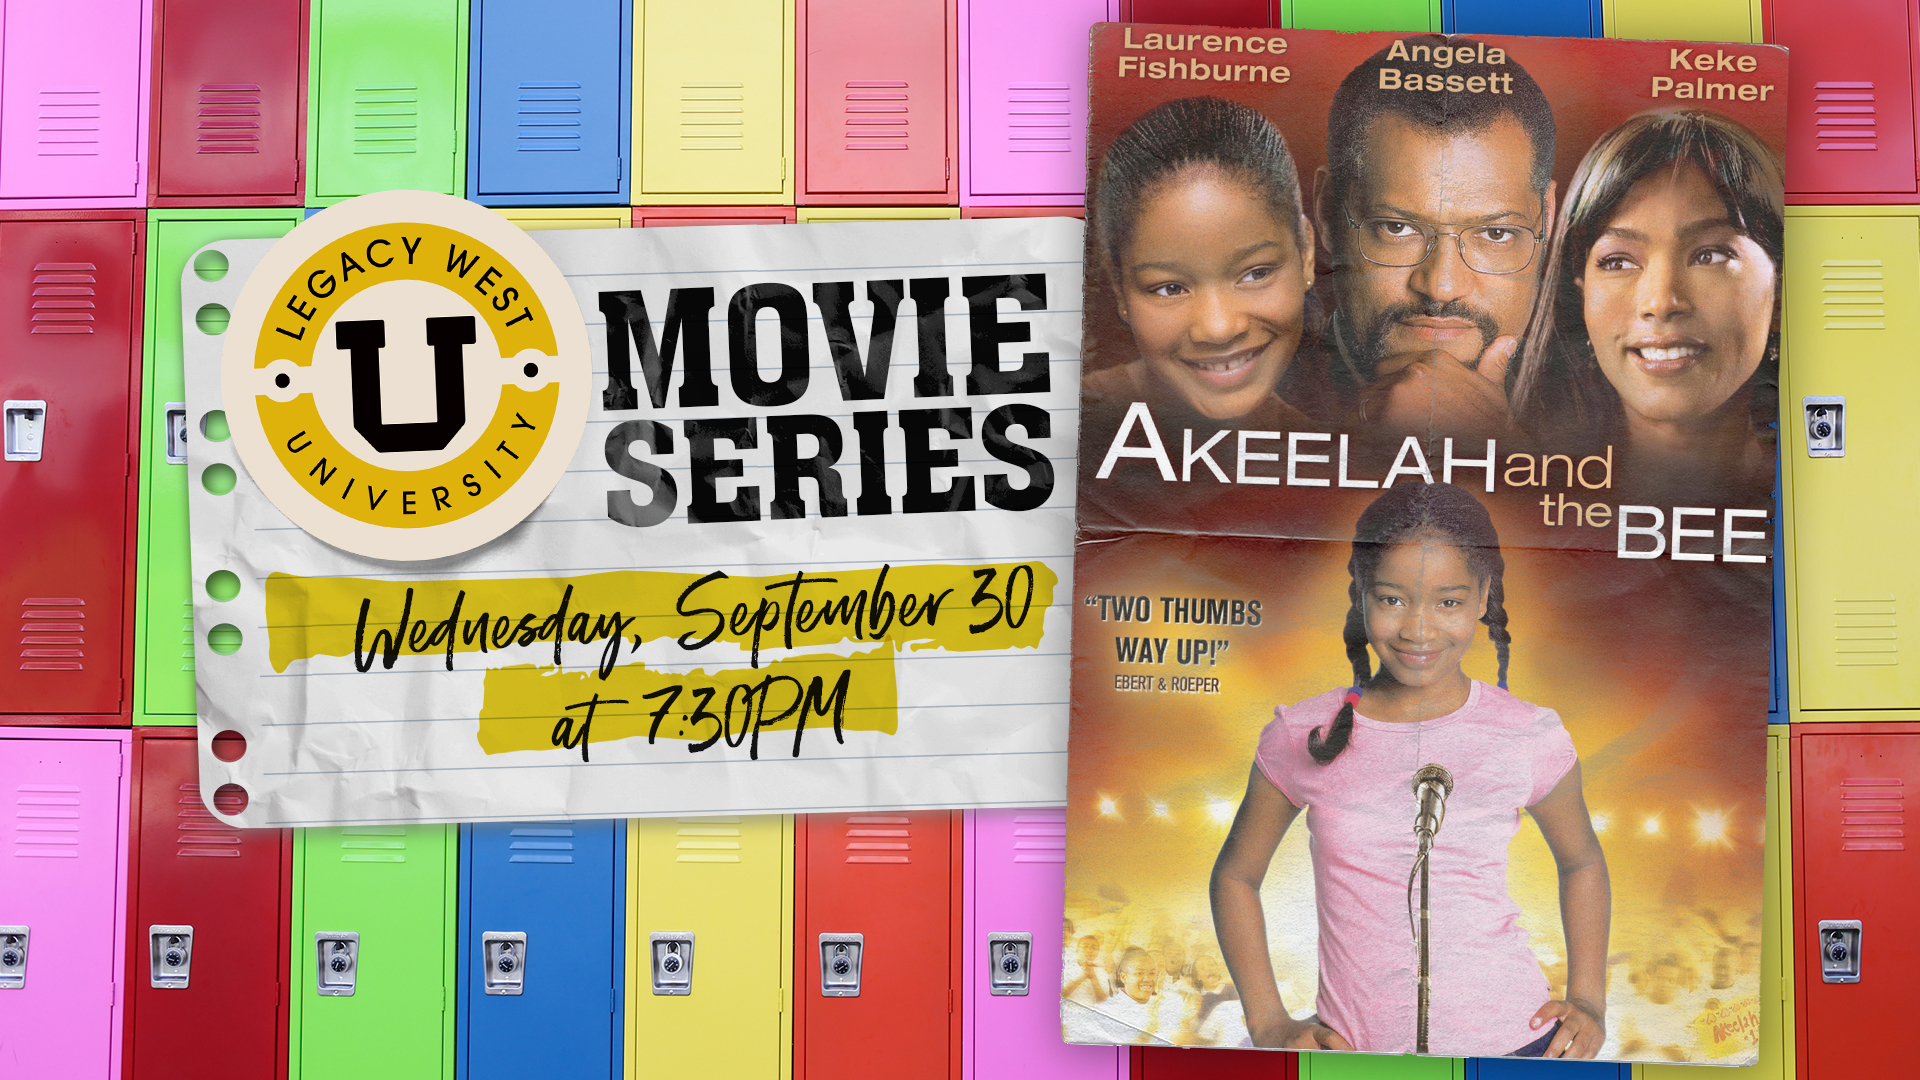 Legacy West University Movie Series: Akeelah and the Bee - hero